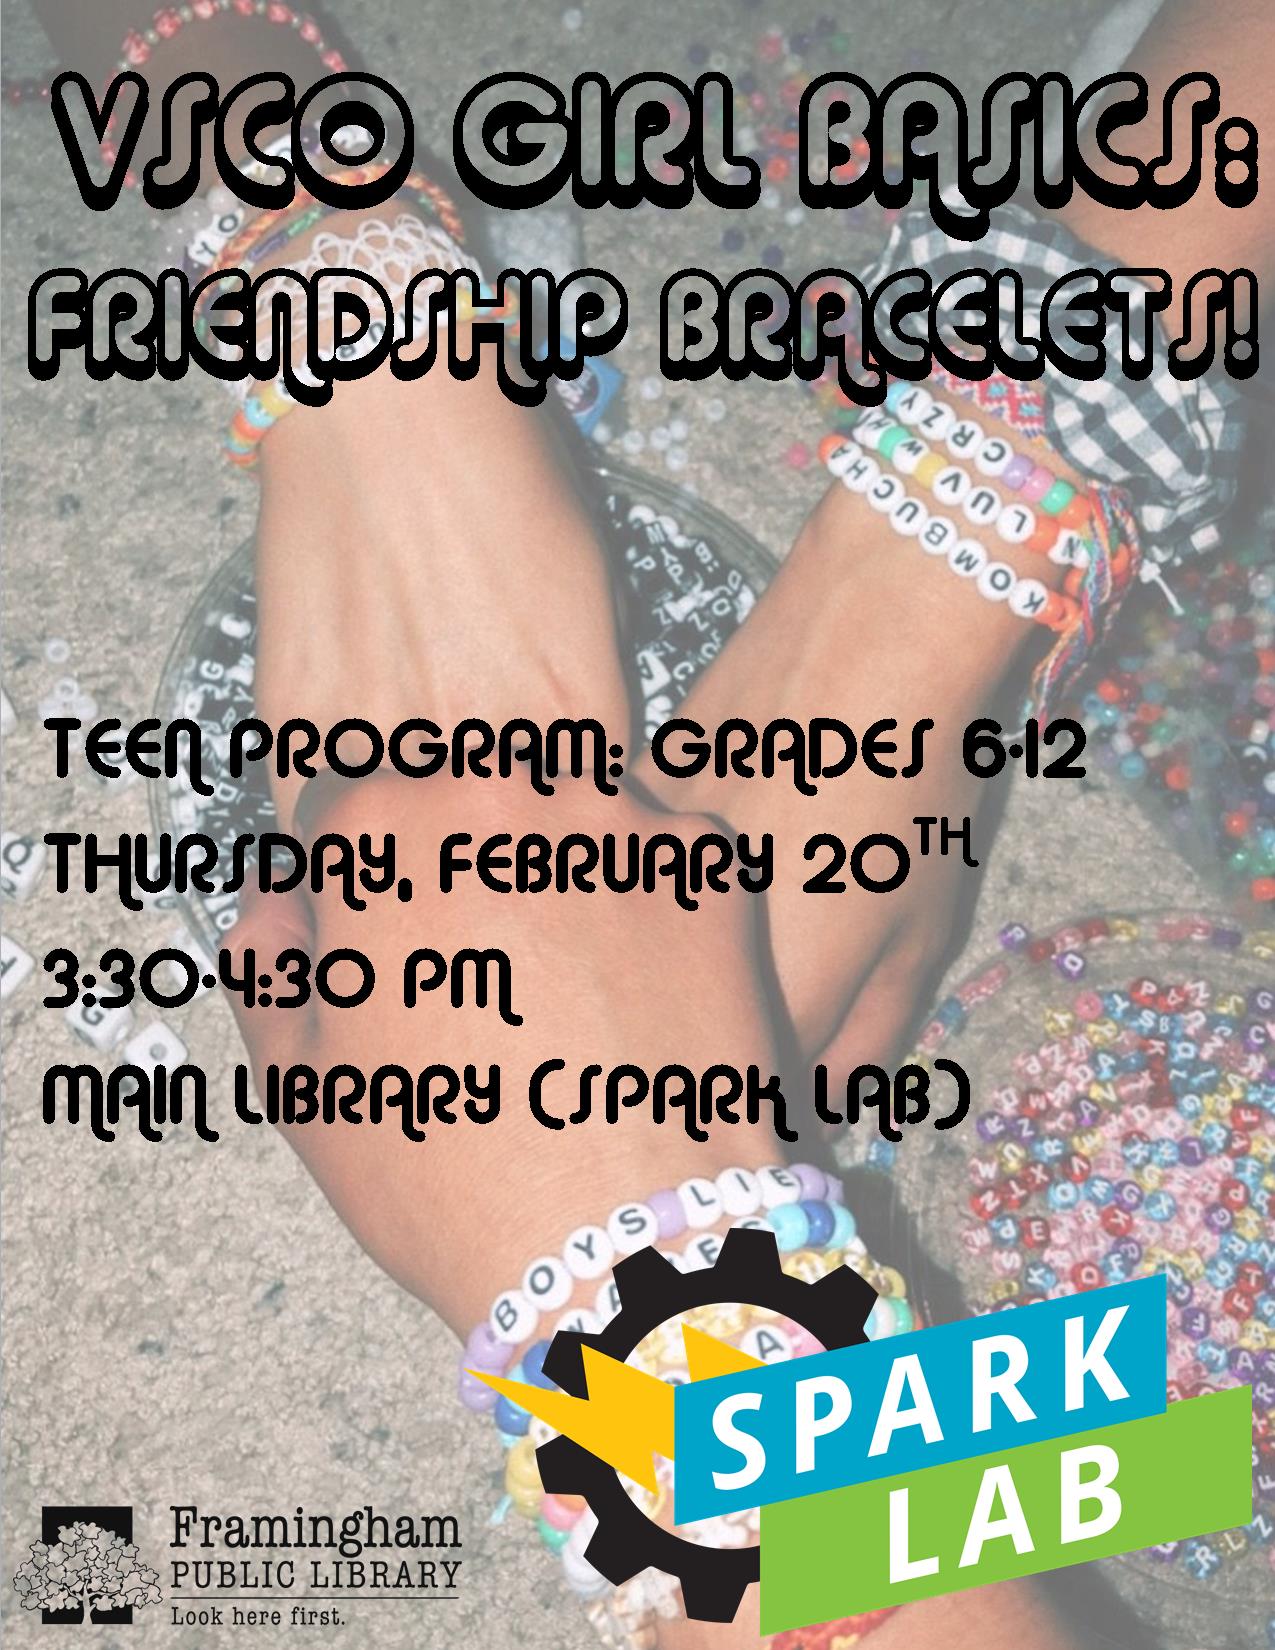 VSCO Girl Basics: Friendship Bracelets thumbnail Photo